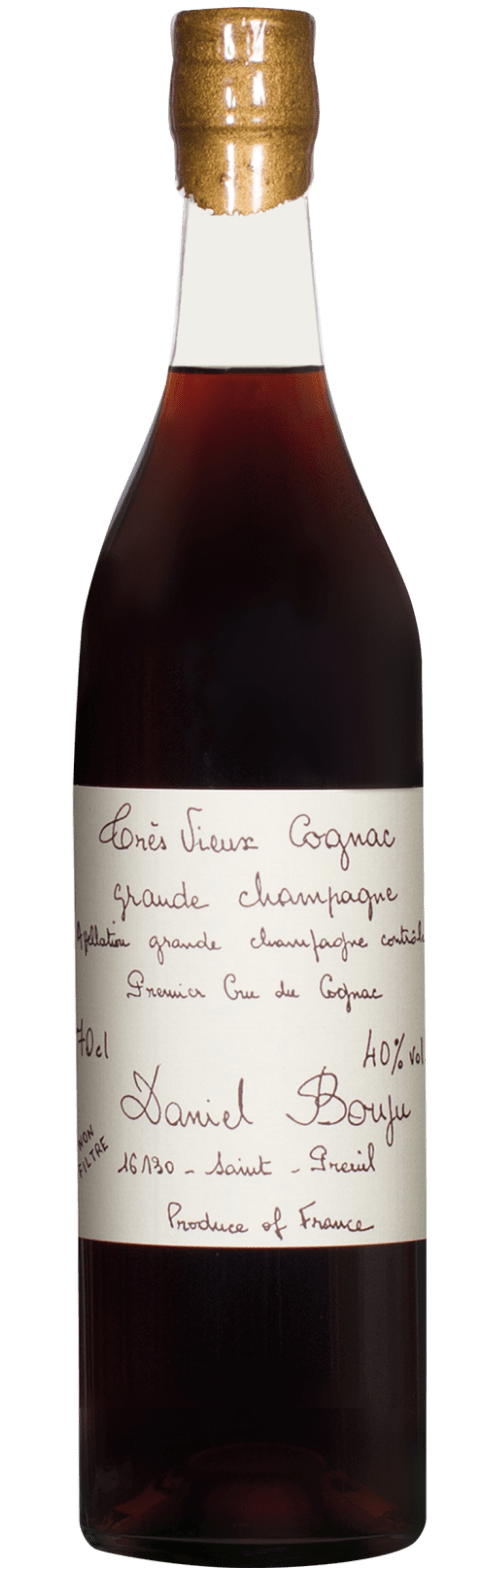 Tres Vieux Cognac Grande Champagne A.C.C. 